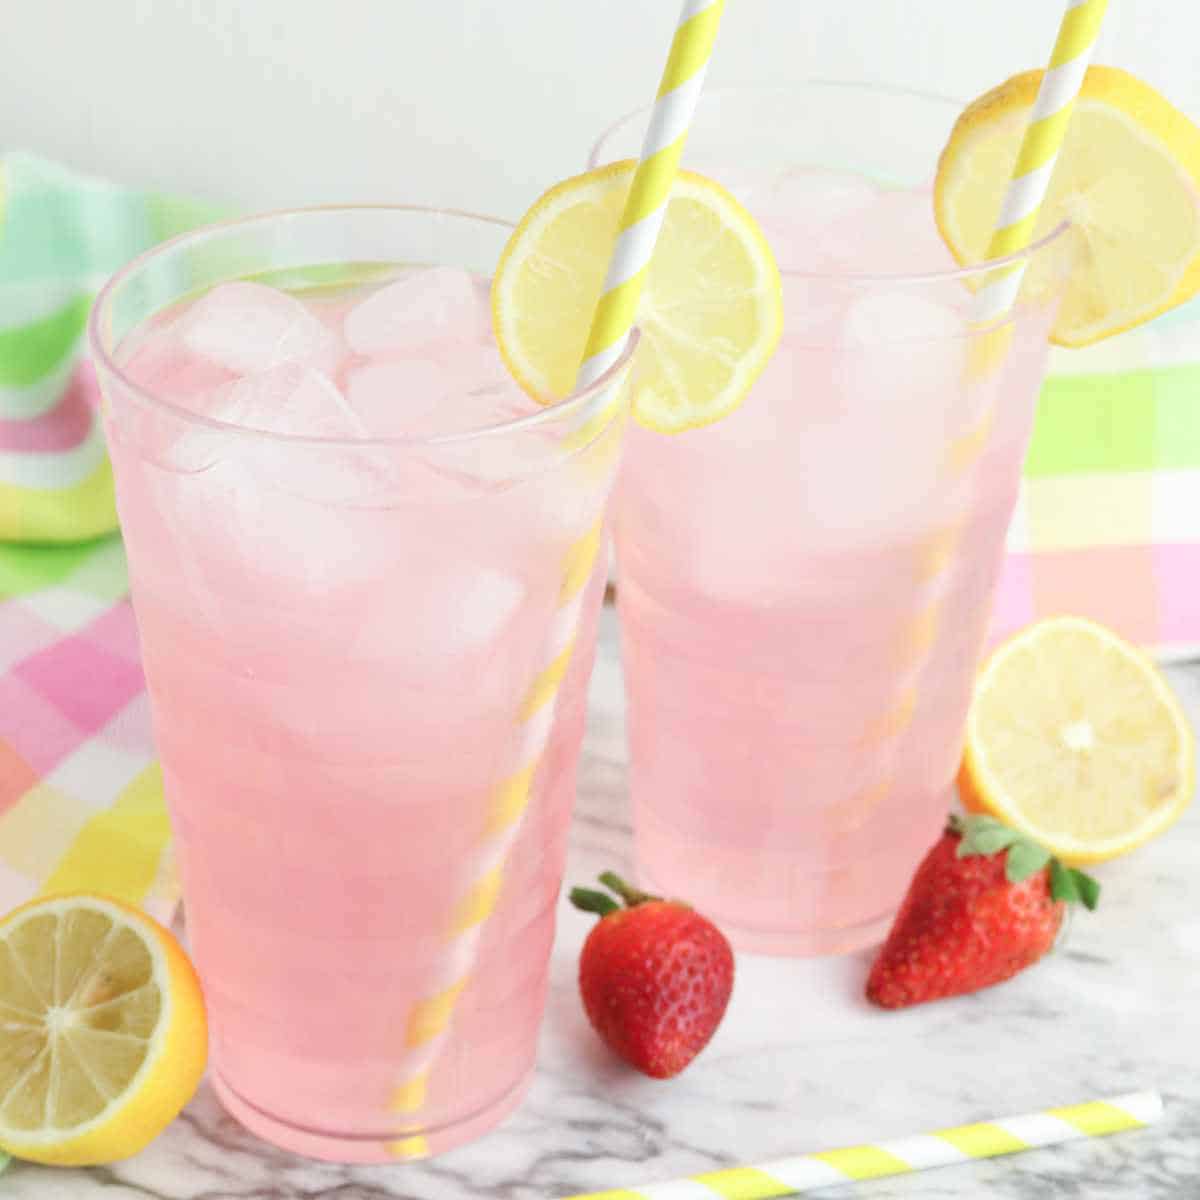 Lemon slices garnishing the tops of glasses of Strawberry Lemonade Spritzers.